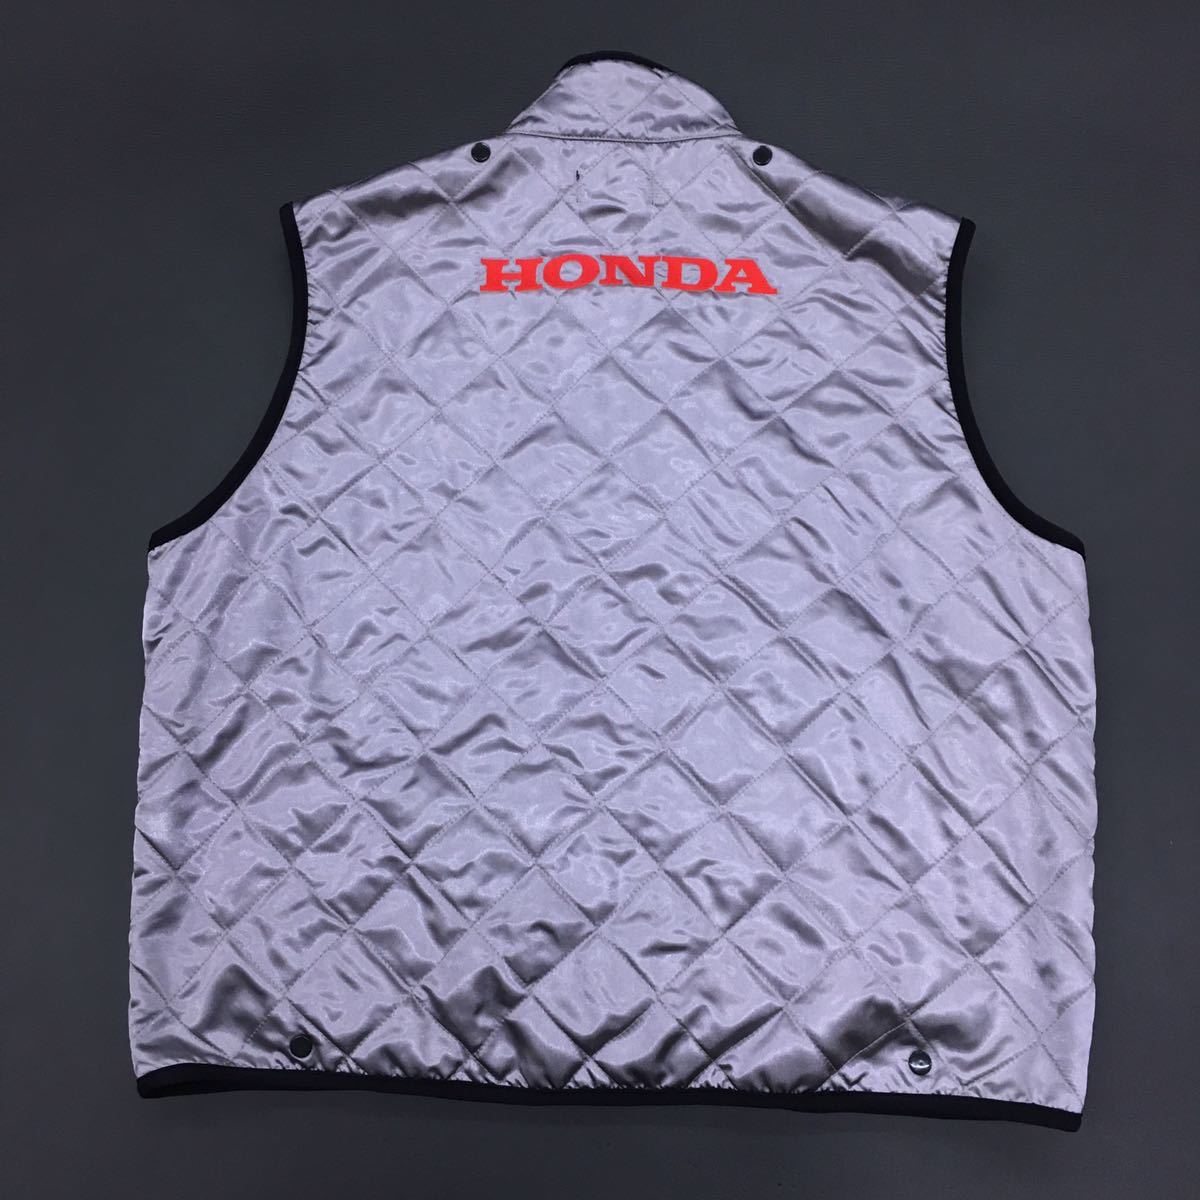 HONDA Honda мотоцикл Japan стеганое полотно лучший мотоцикл одежда подкладка флис зимний костюм мужской LL silver gray OSYTH-G3J